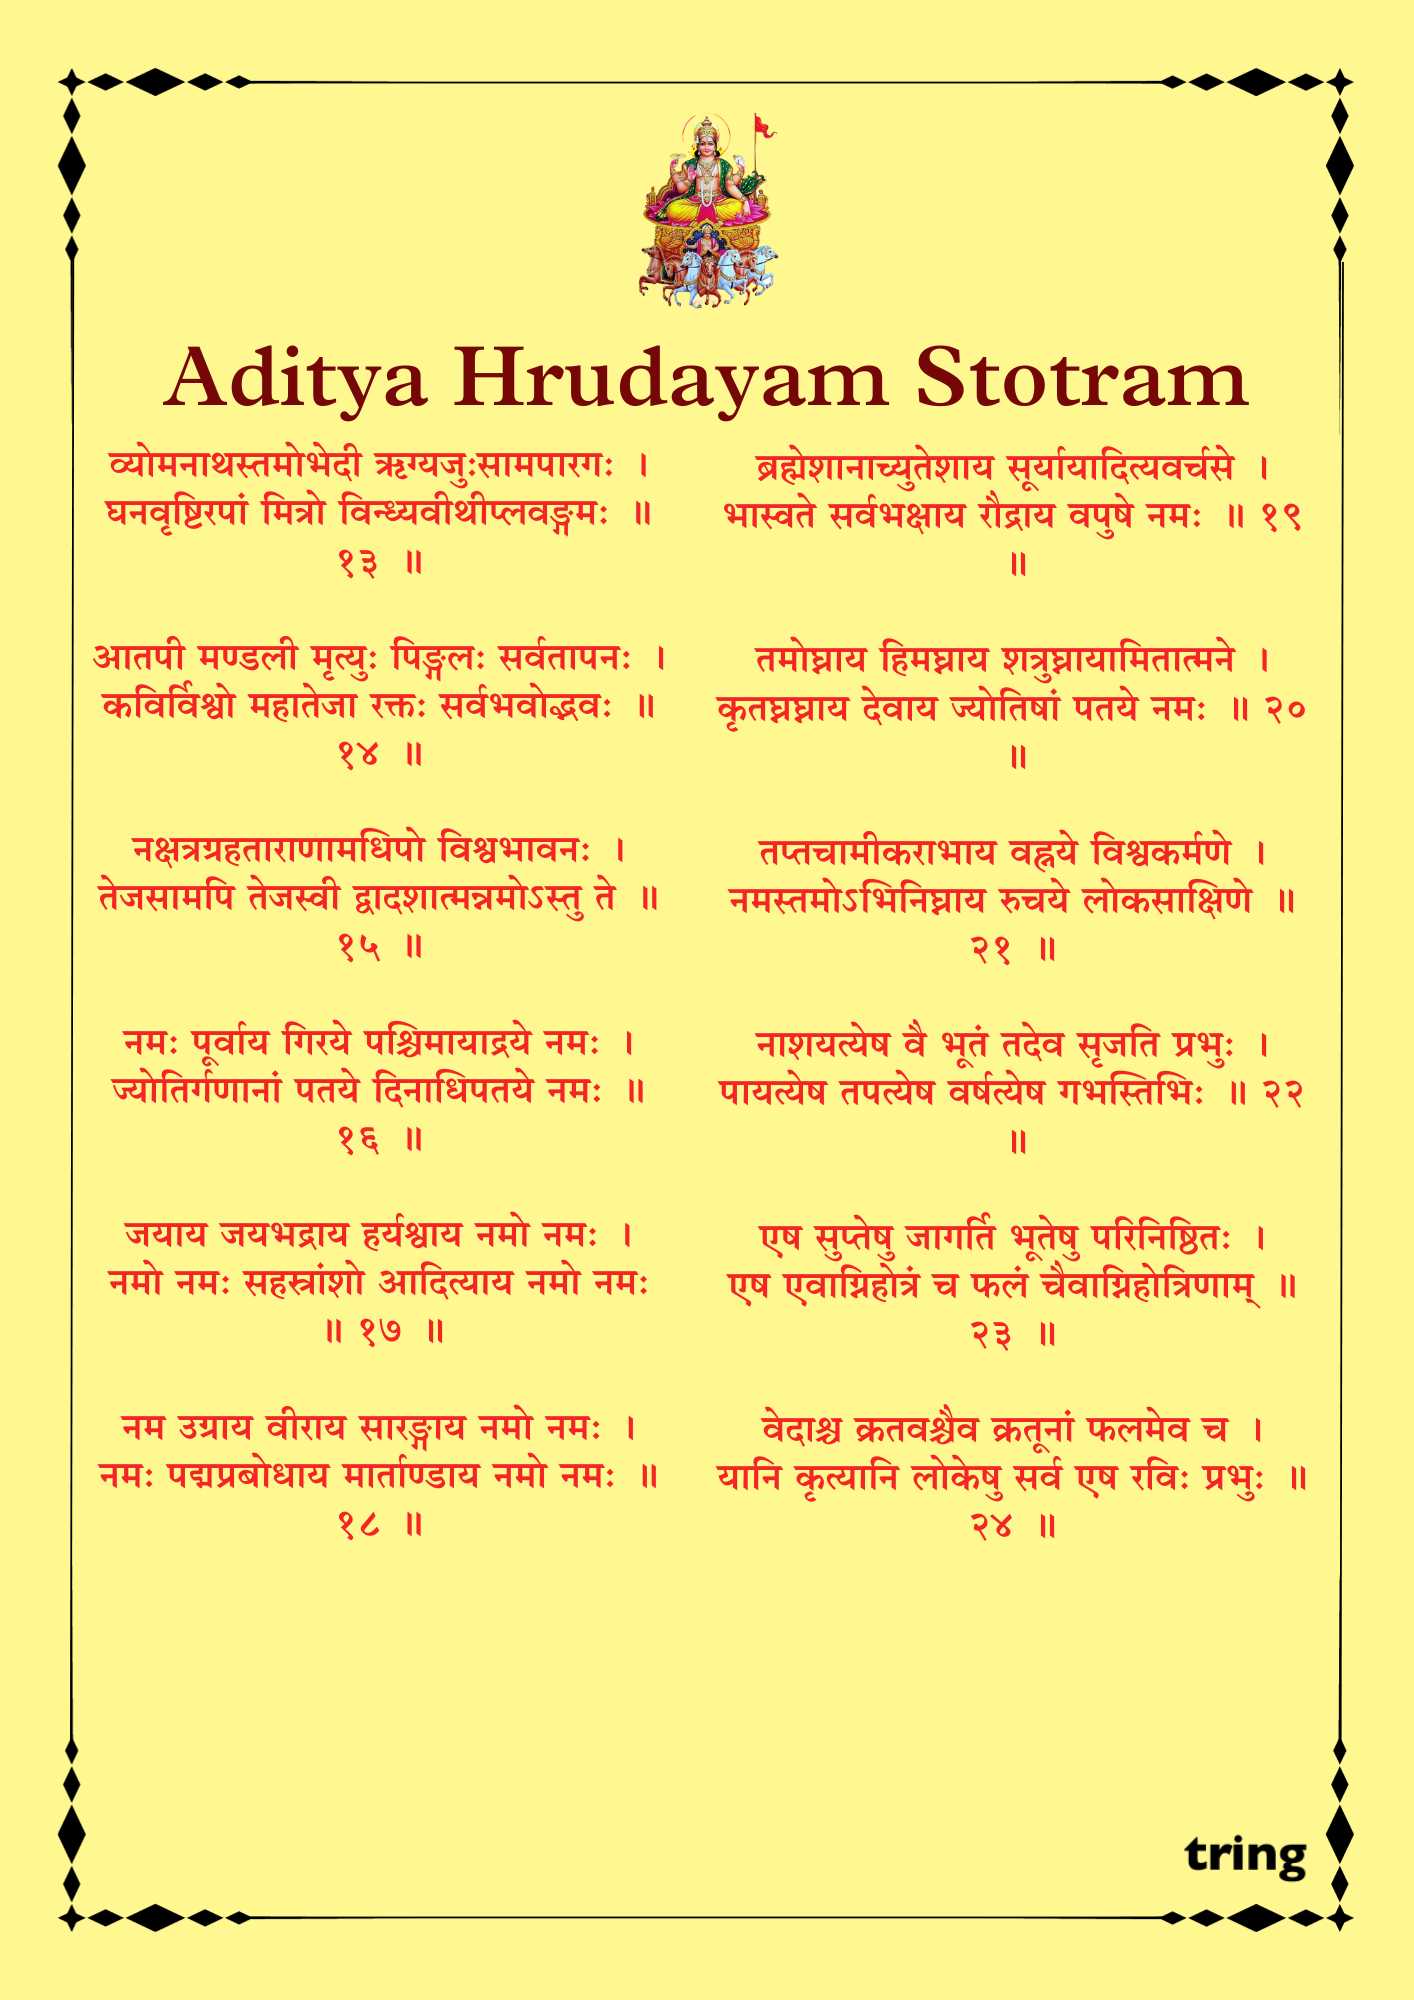 Aditya Hrudayam Stotram Images (1)